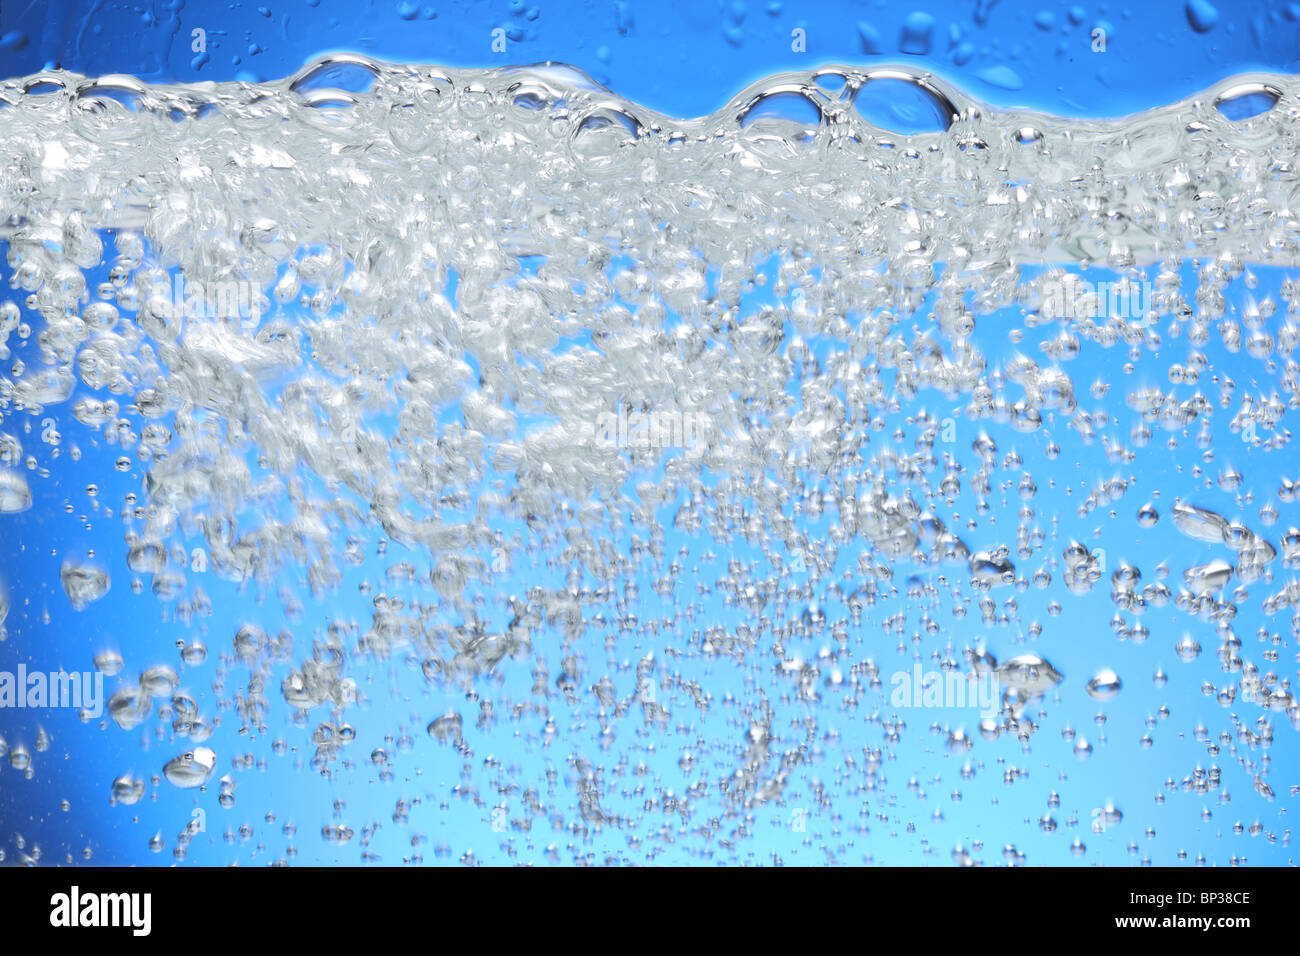 Las burbujas de aire se elevan desde la superficie del agua. Foto de stock